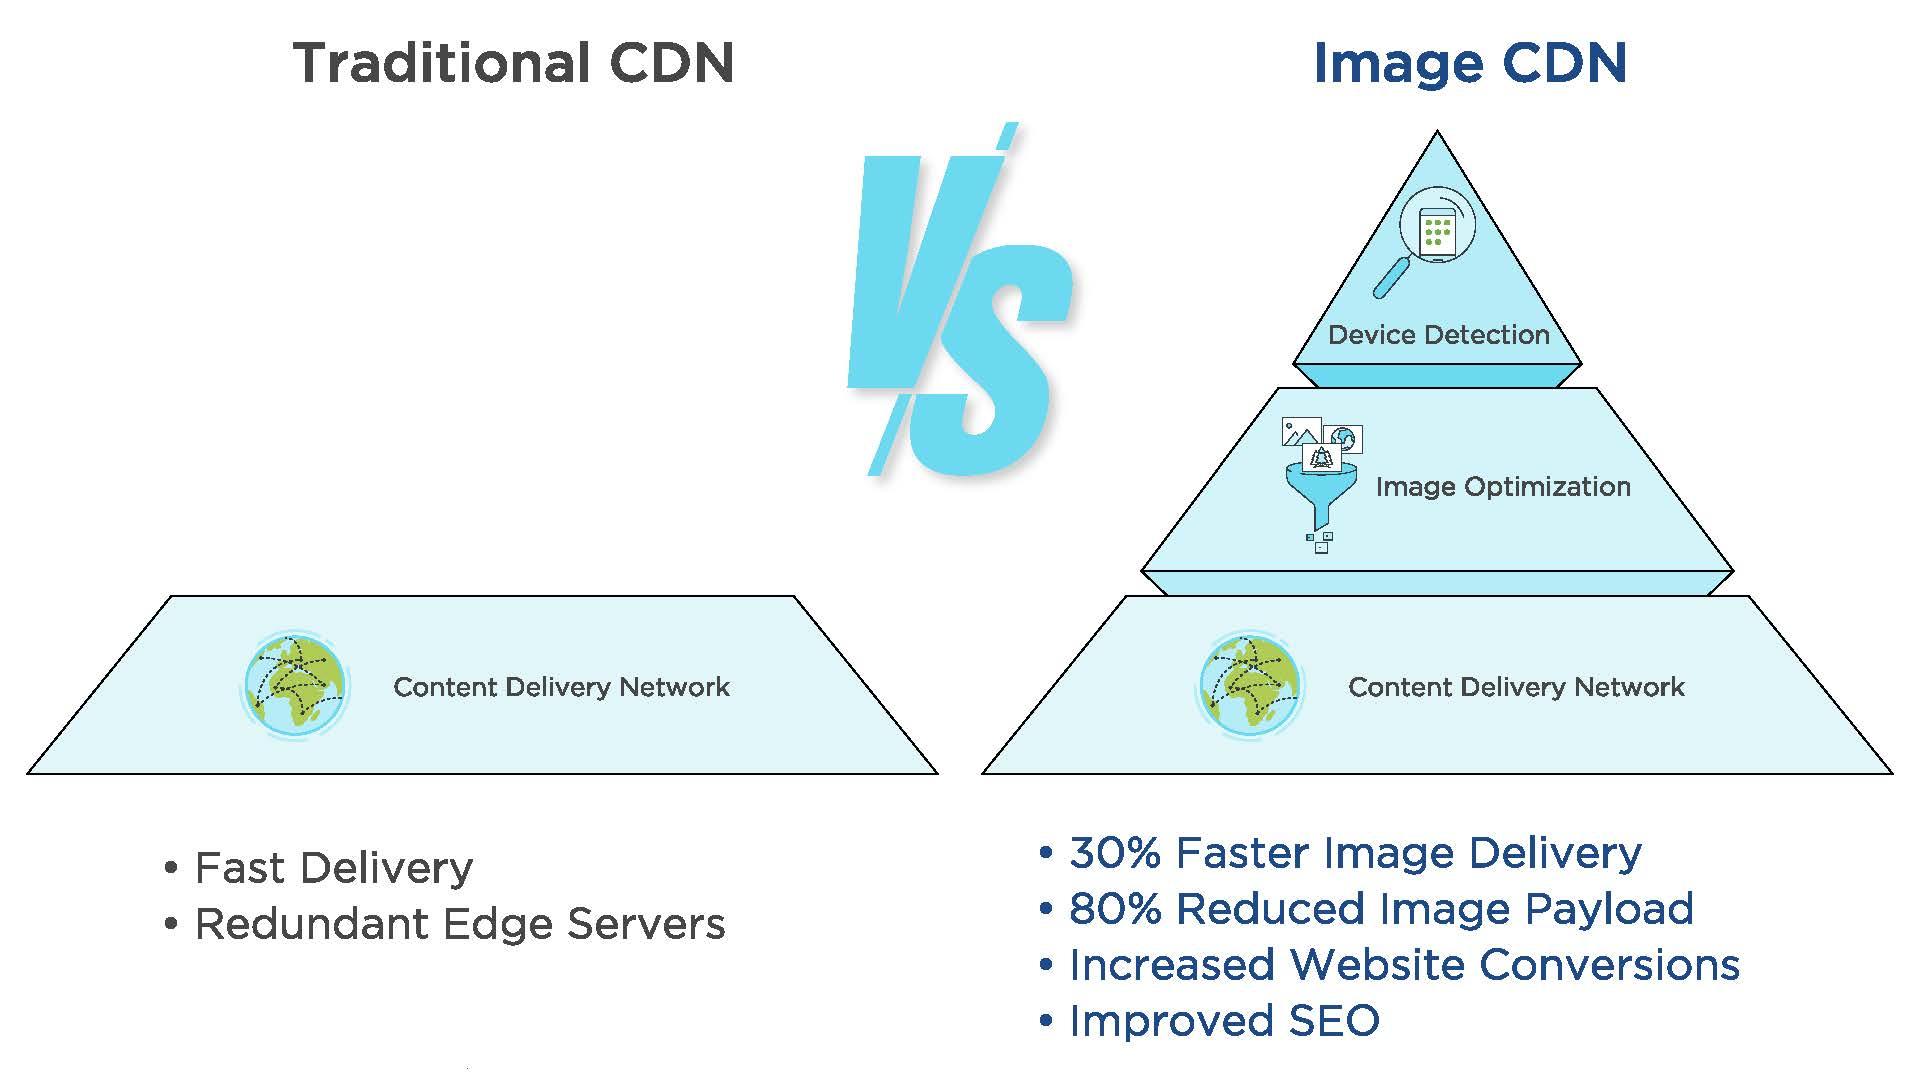 Traditional vs Image CDN